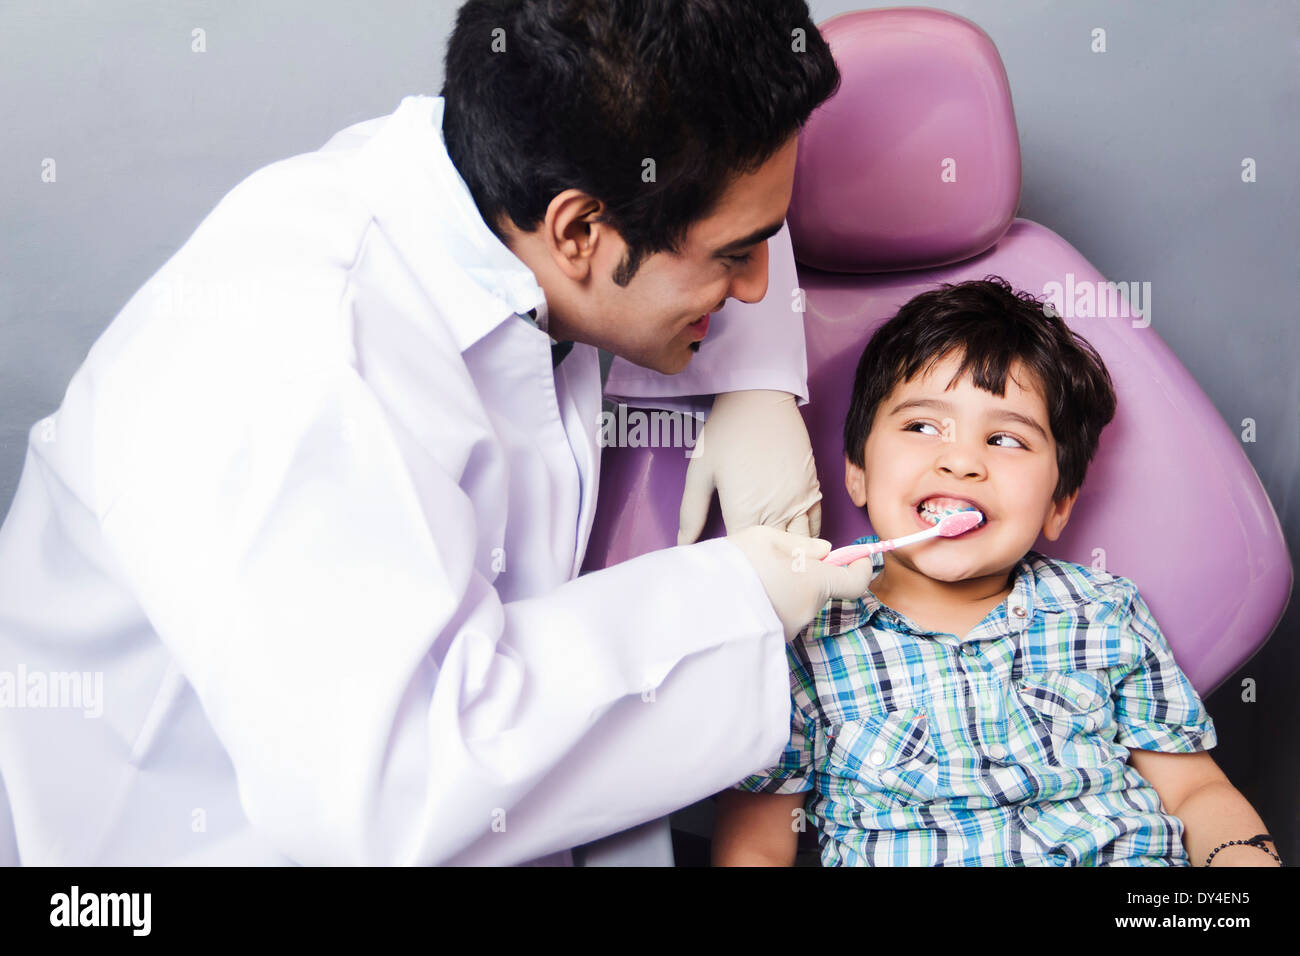 Indische Zahnarzt überprüfen Zähne Stockfoto